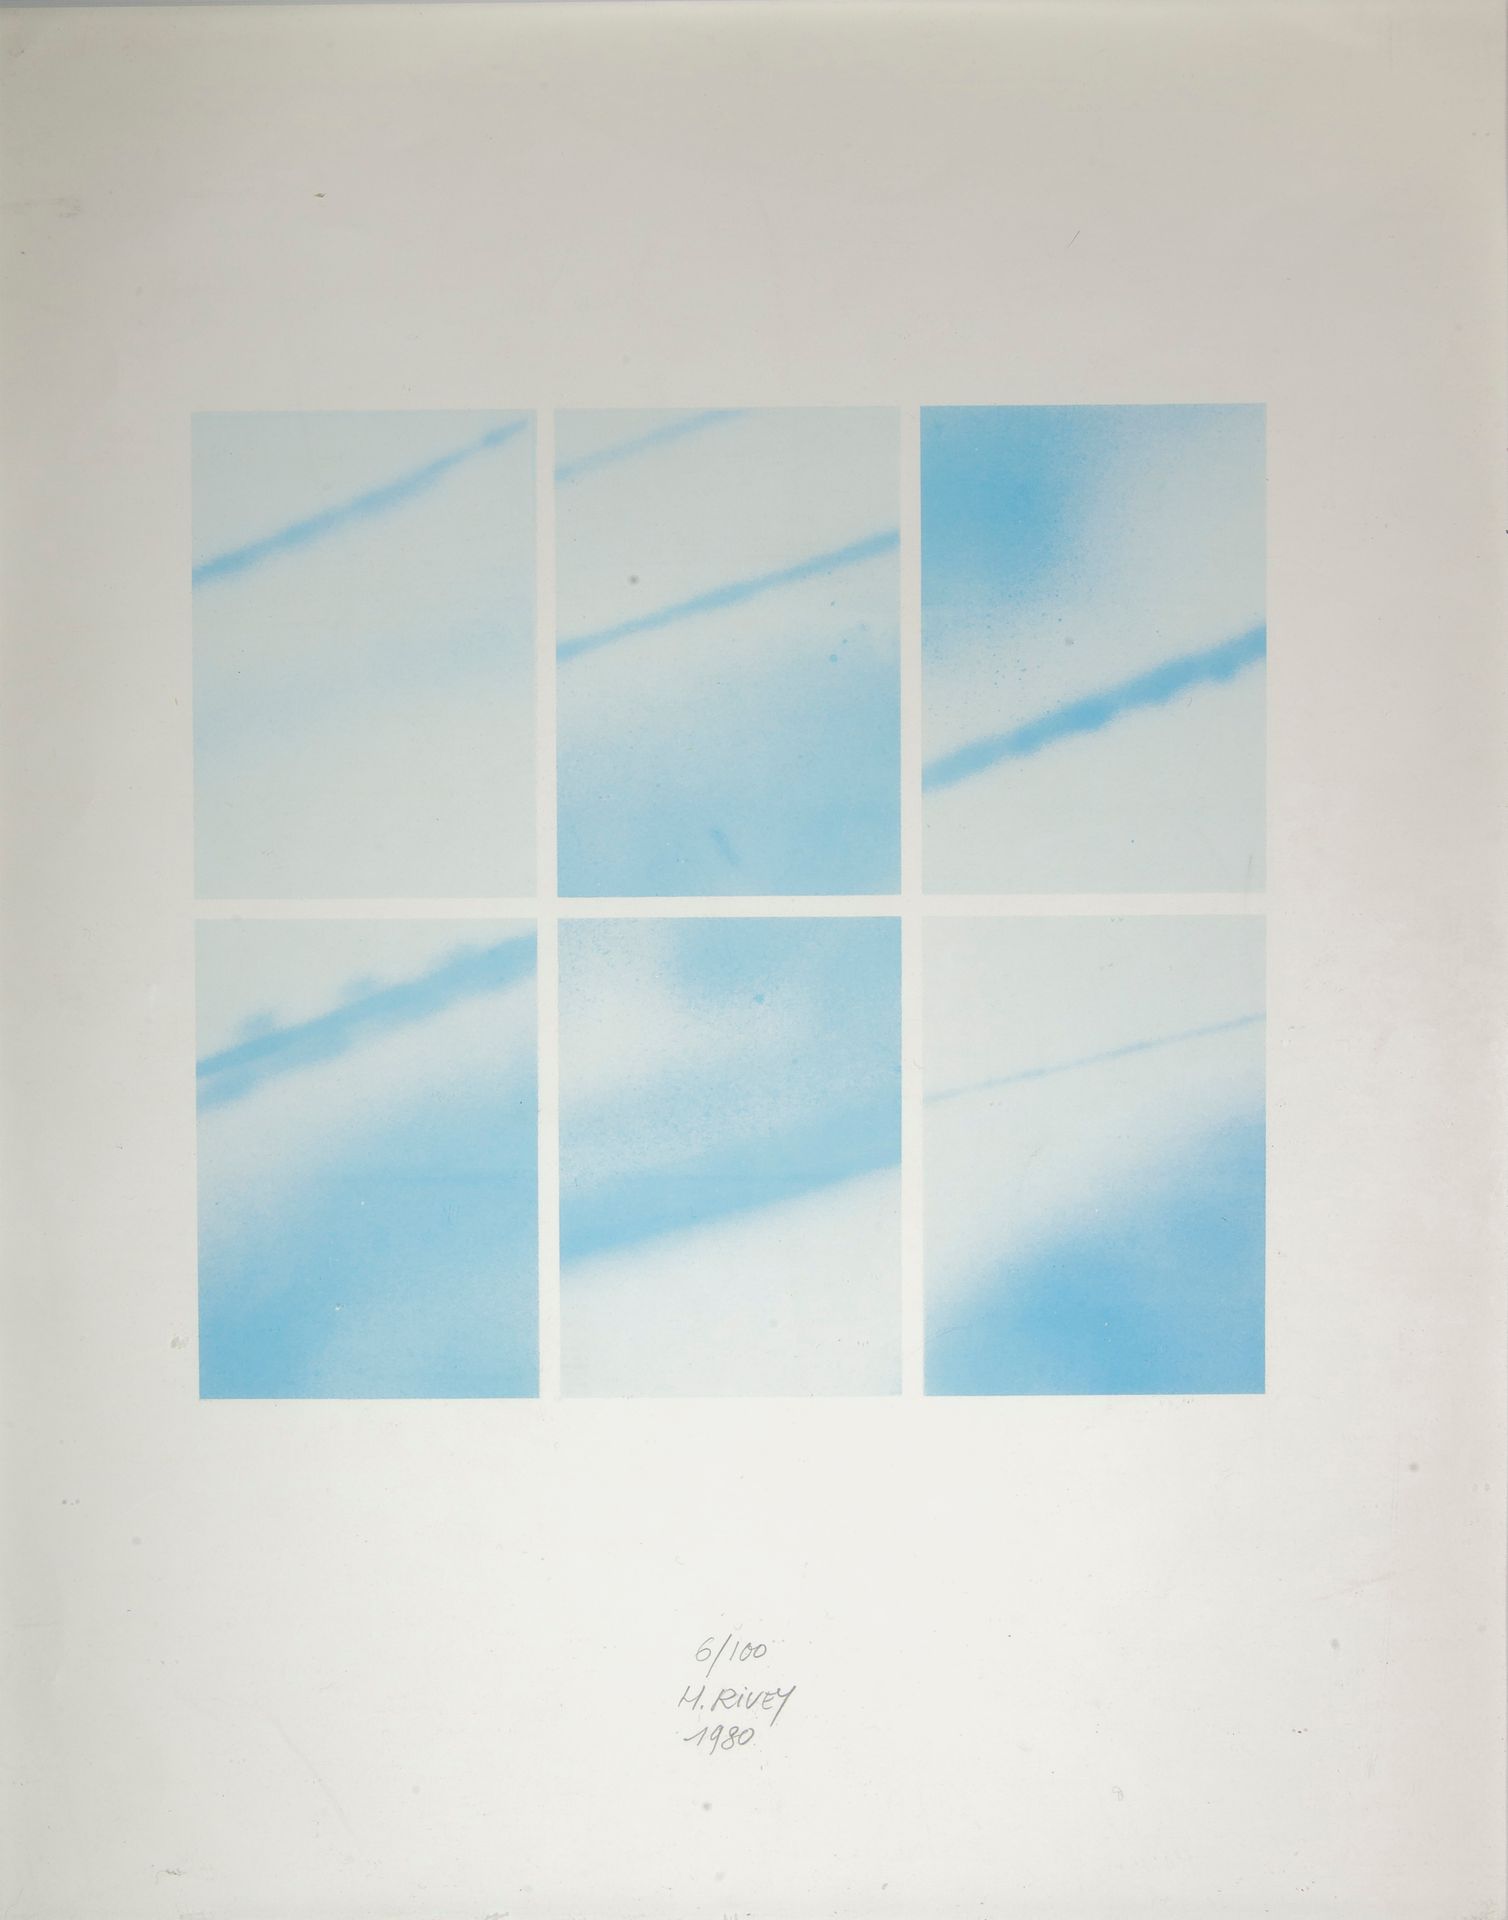 H. RIVEY, Composición abstracta

Estampado firmado a lápiz en el centro inferior&hellip;